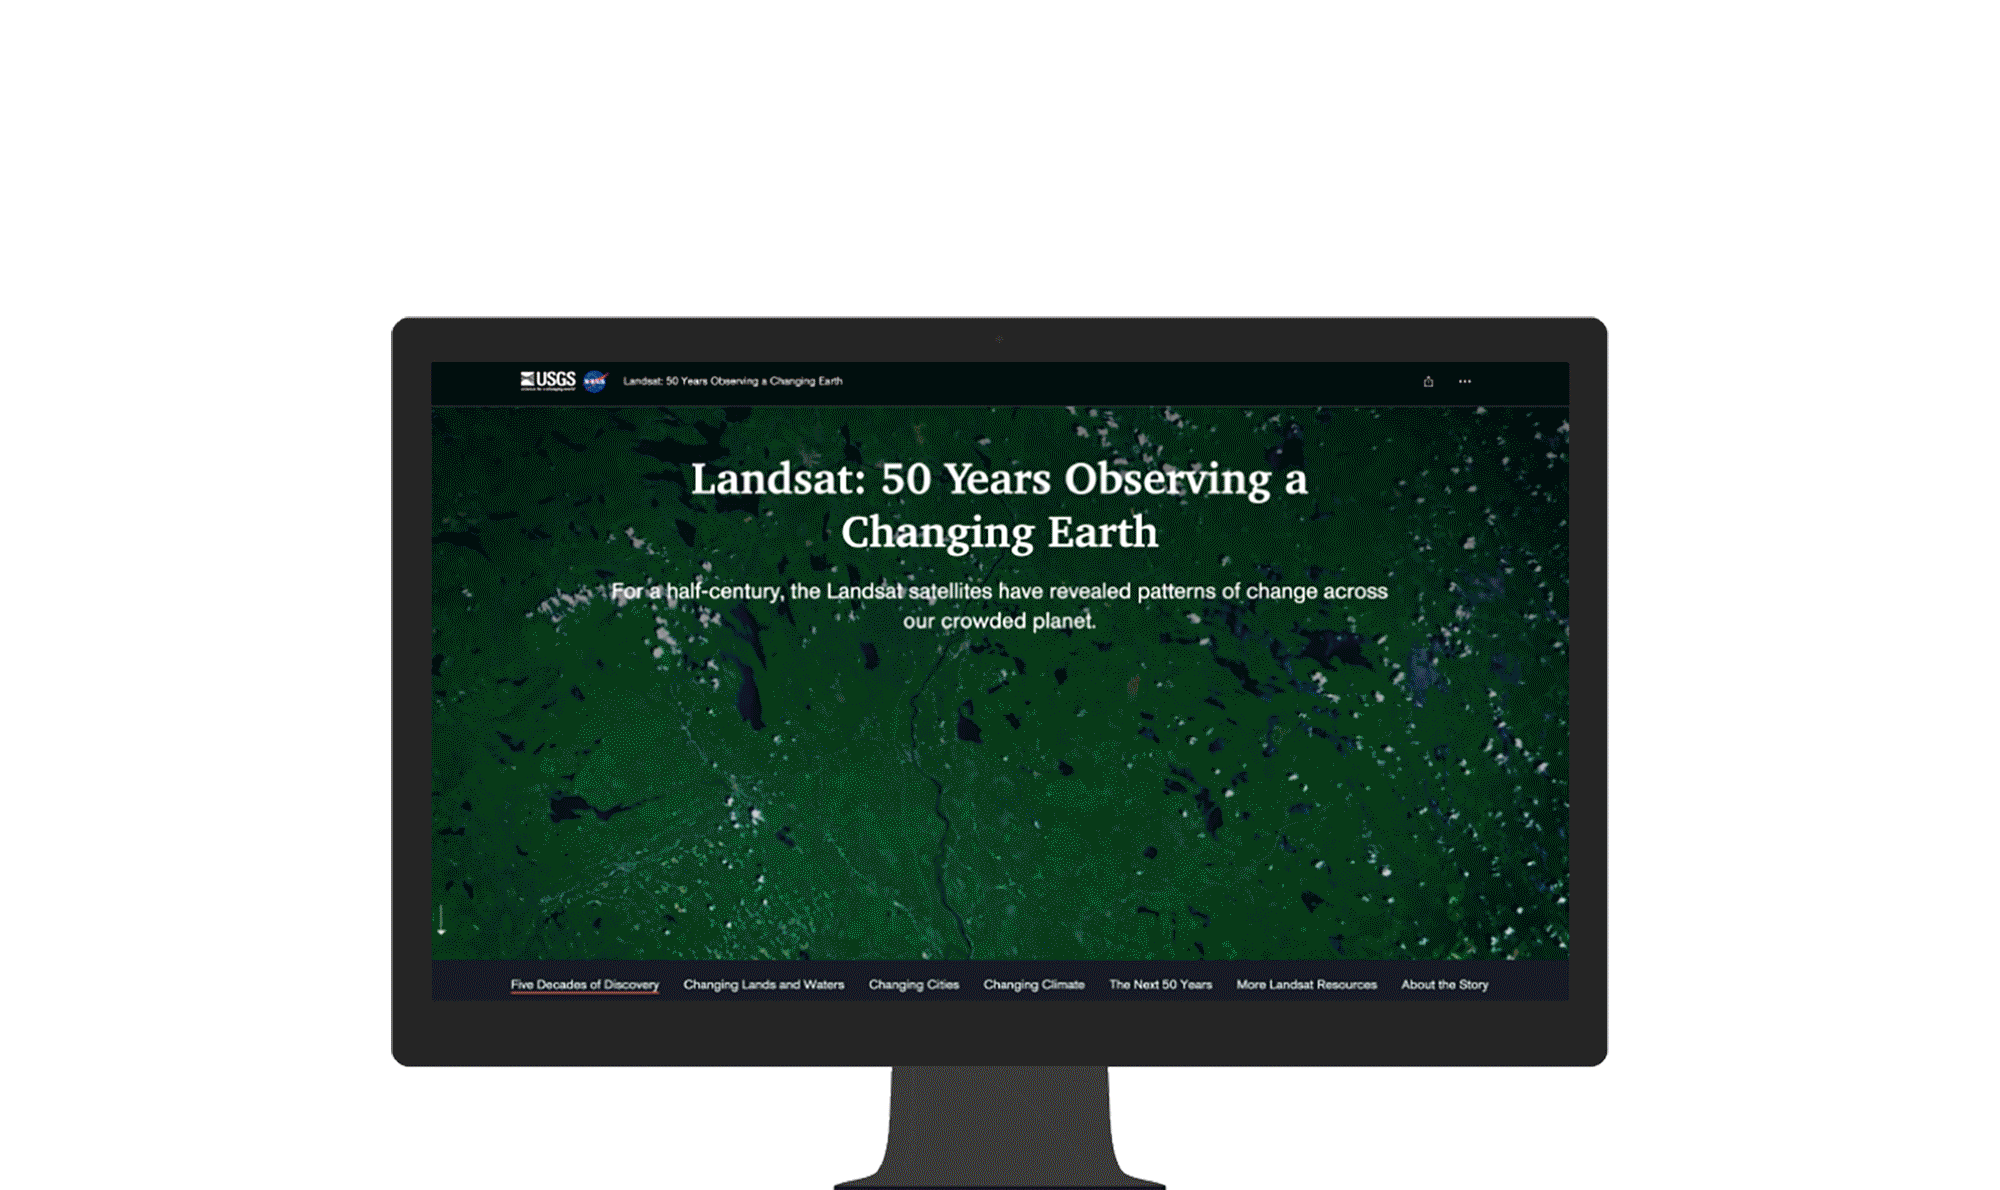 Computerbildschirm, auf dem ein Artikel mit Text und Landschafts-Luftaufnahmen, die mit dem Landsat-Satellit erfasst wurden, zu sehen ist